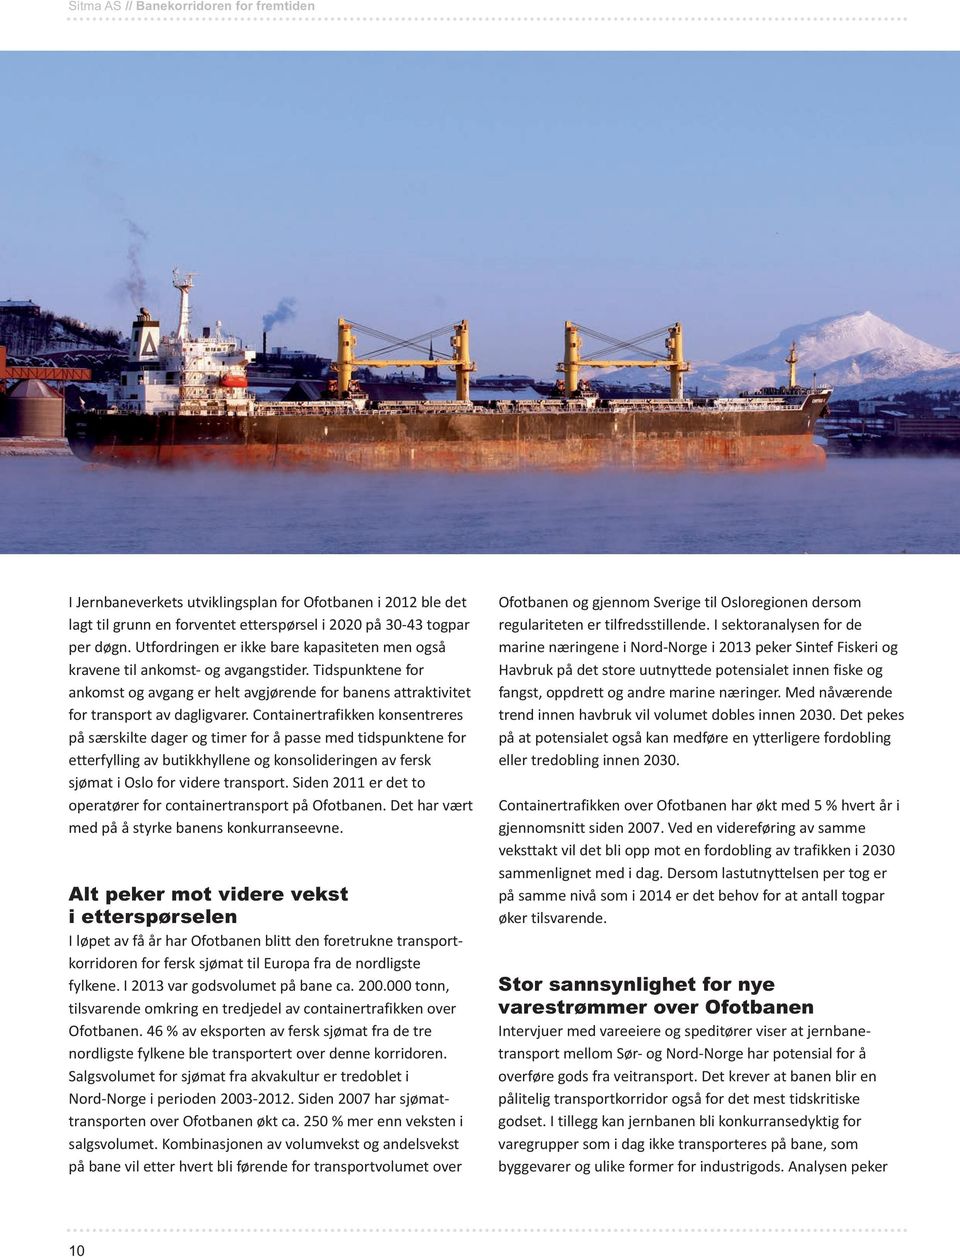 Containertrafikken konsentreres på særskilte dager og timer for å passe med tidspunktene for etterfylling av butikkhyllene og konsolideringen av fersk sjømat i Oslo for videre transport.